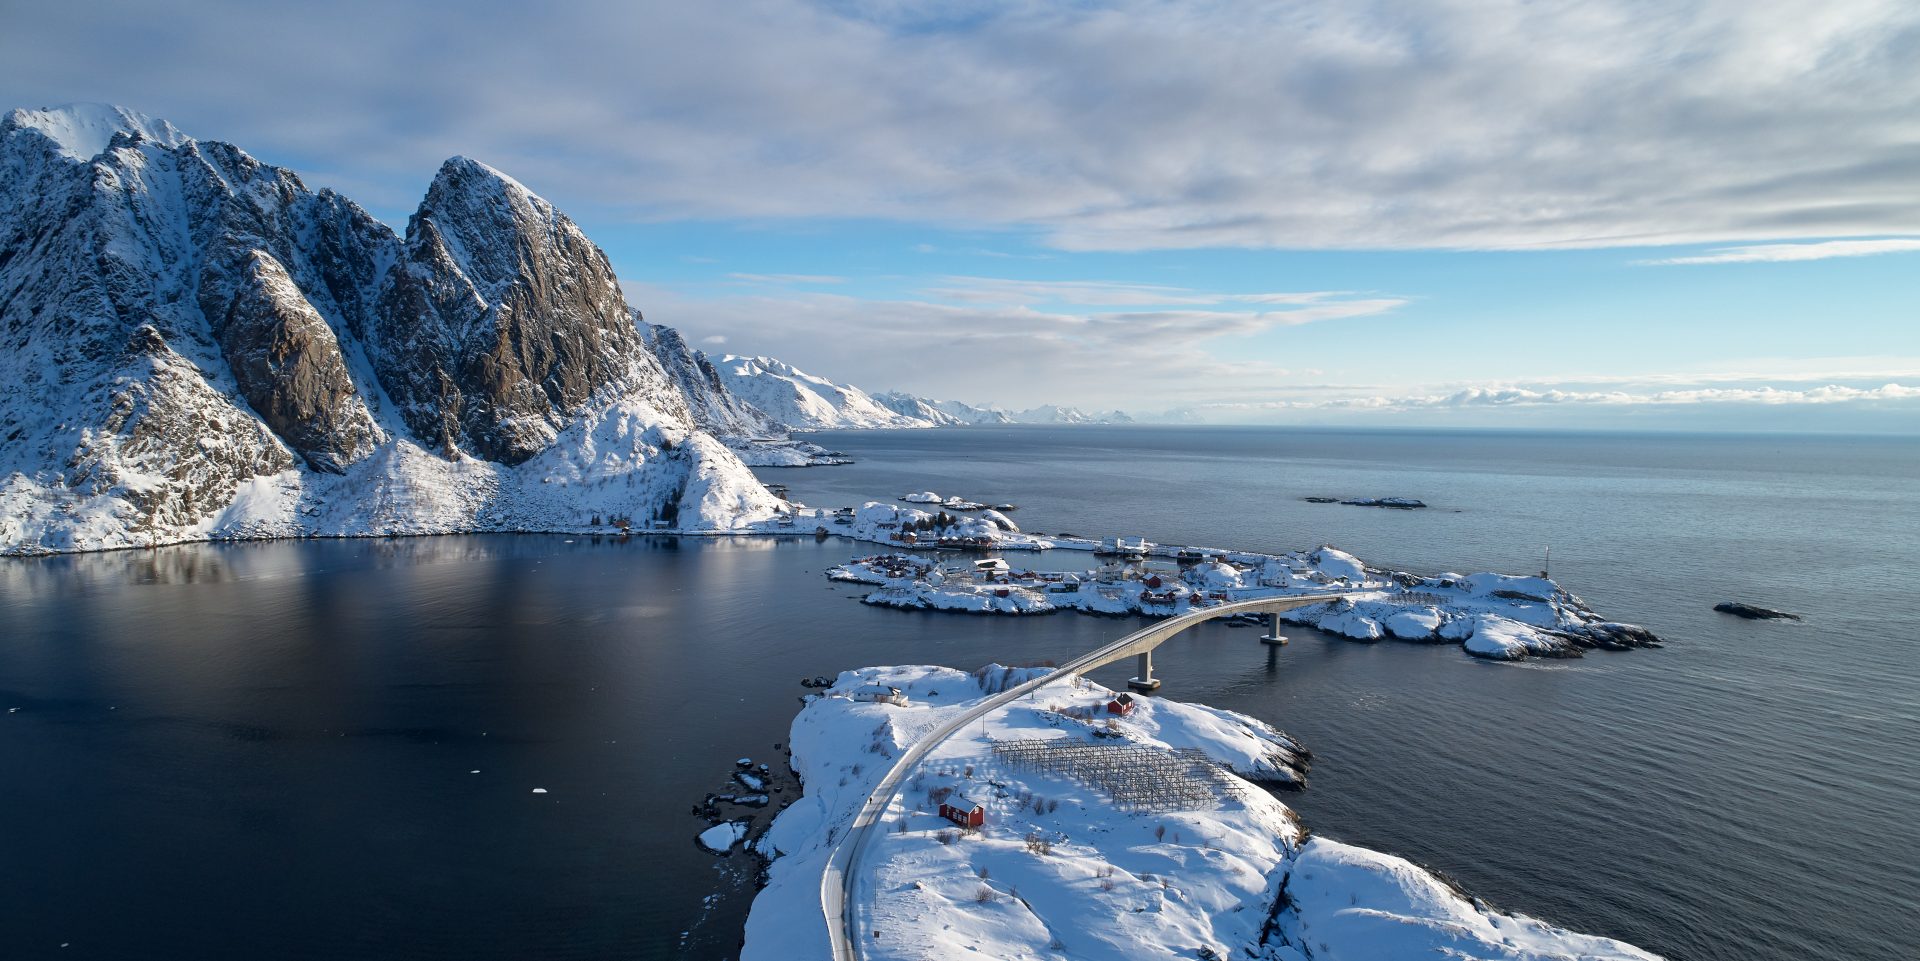 Winter in lofoten archipelago, Norway